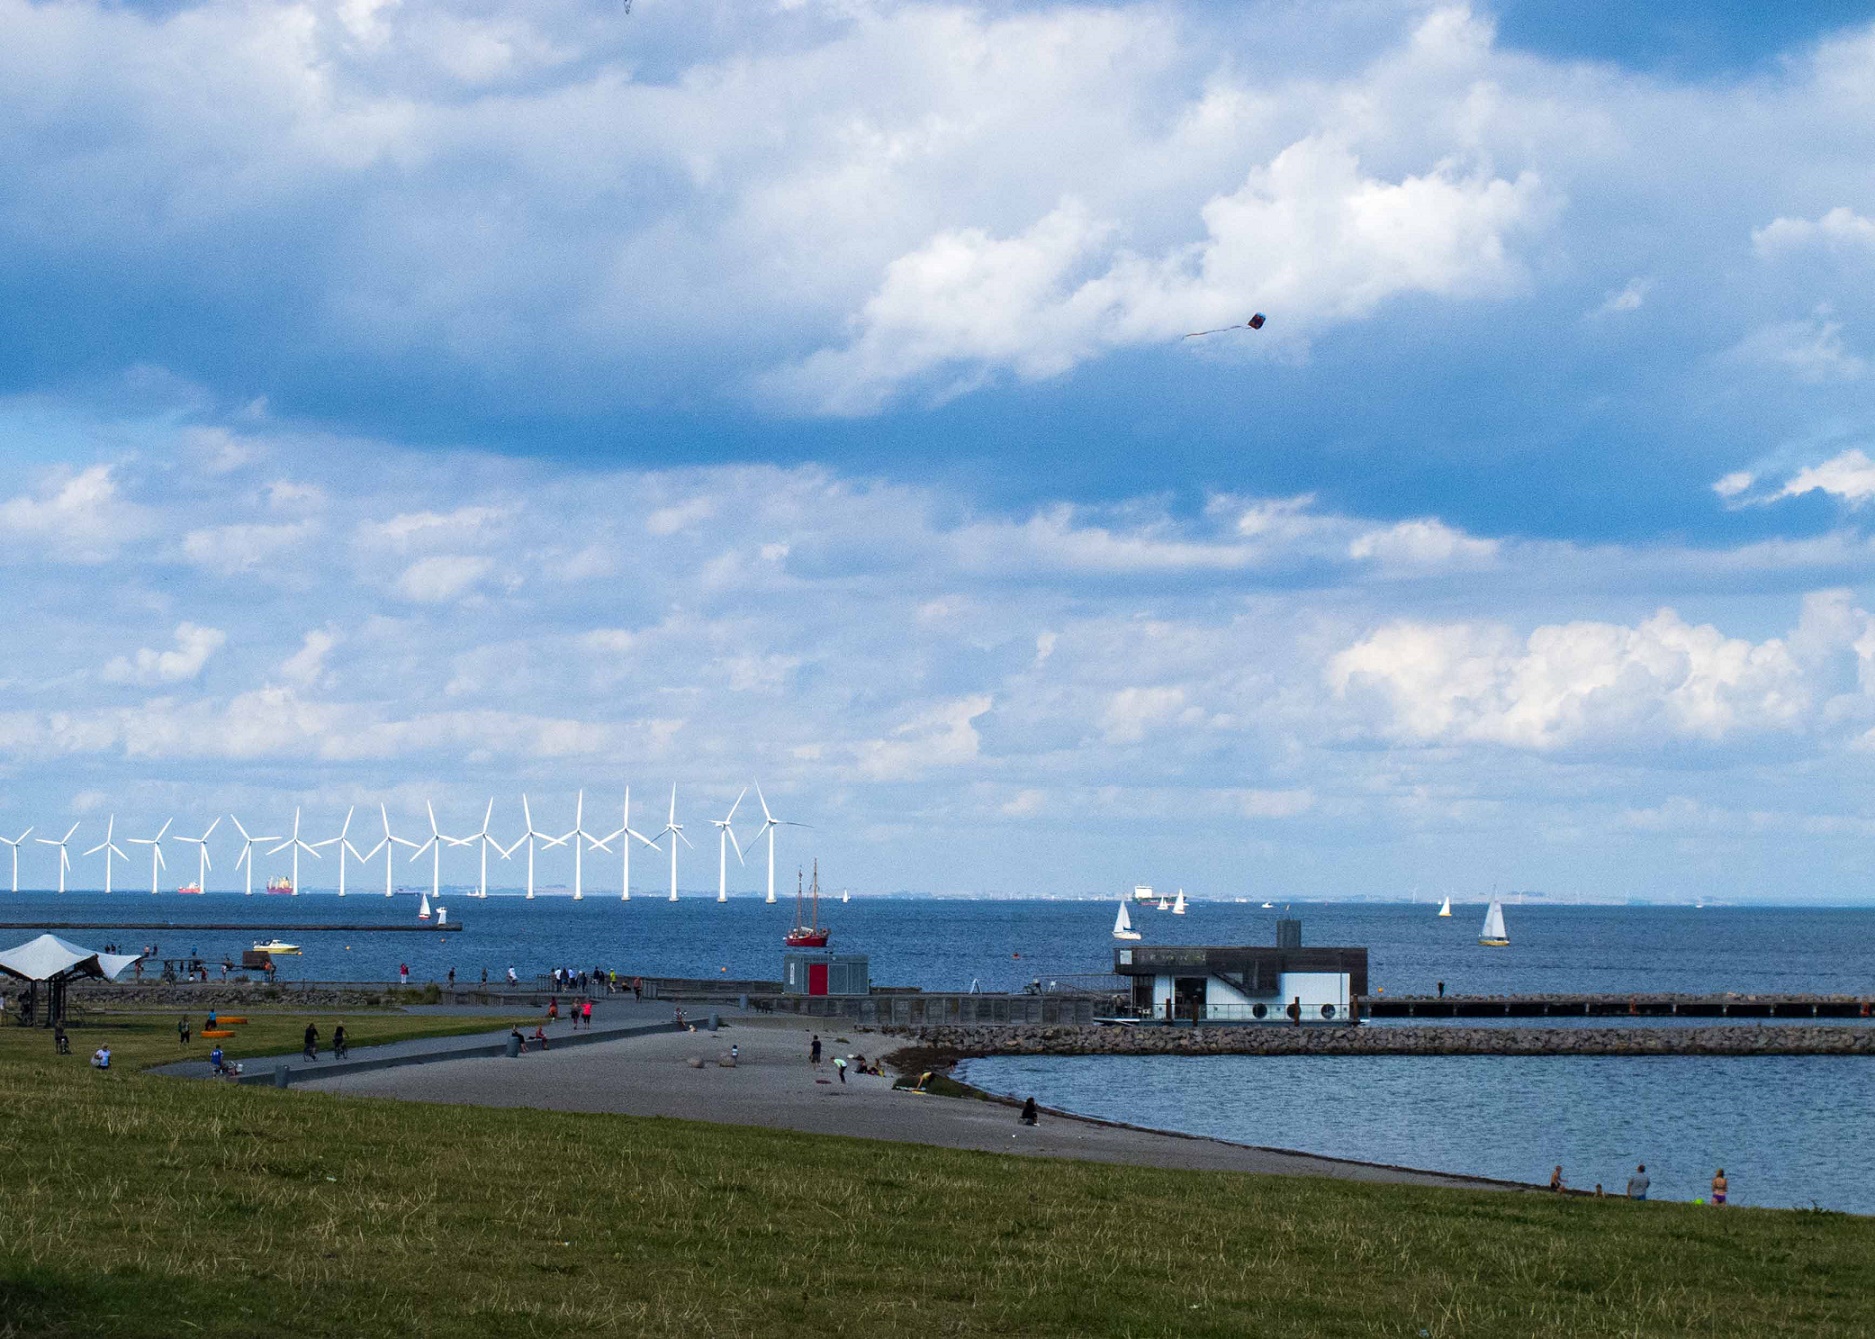 Enquanto nações se comprometem em investir mais em projetos verdes para combater os aquecimento global, a Dinamarca, que já é verde amarga recentes cortes do governo no setor para 2016